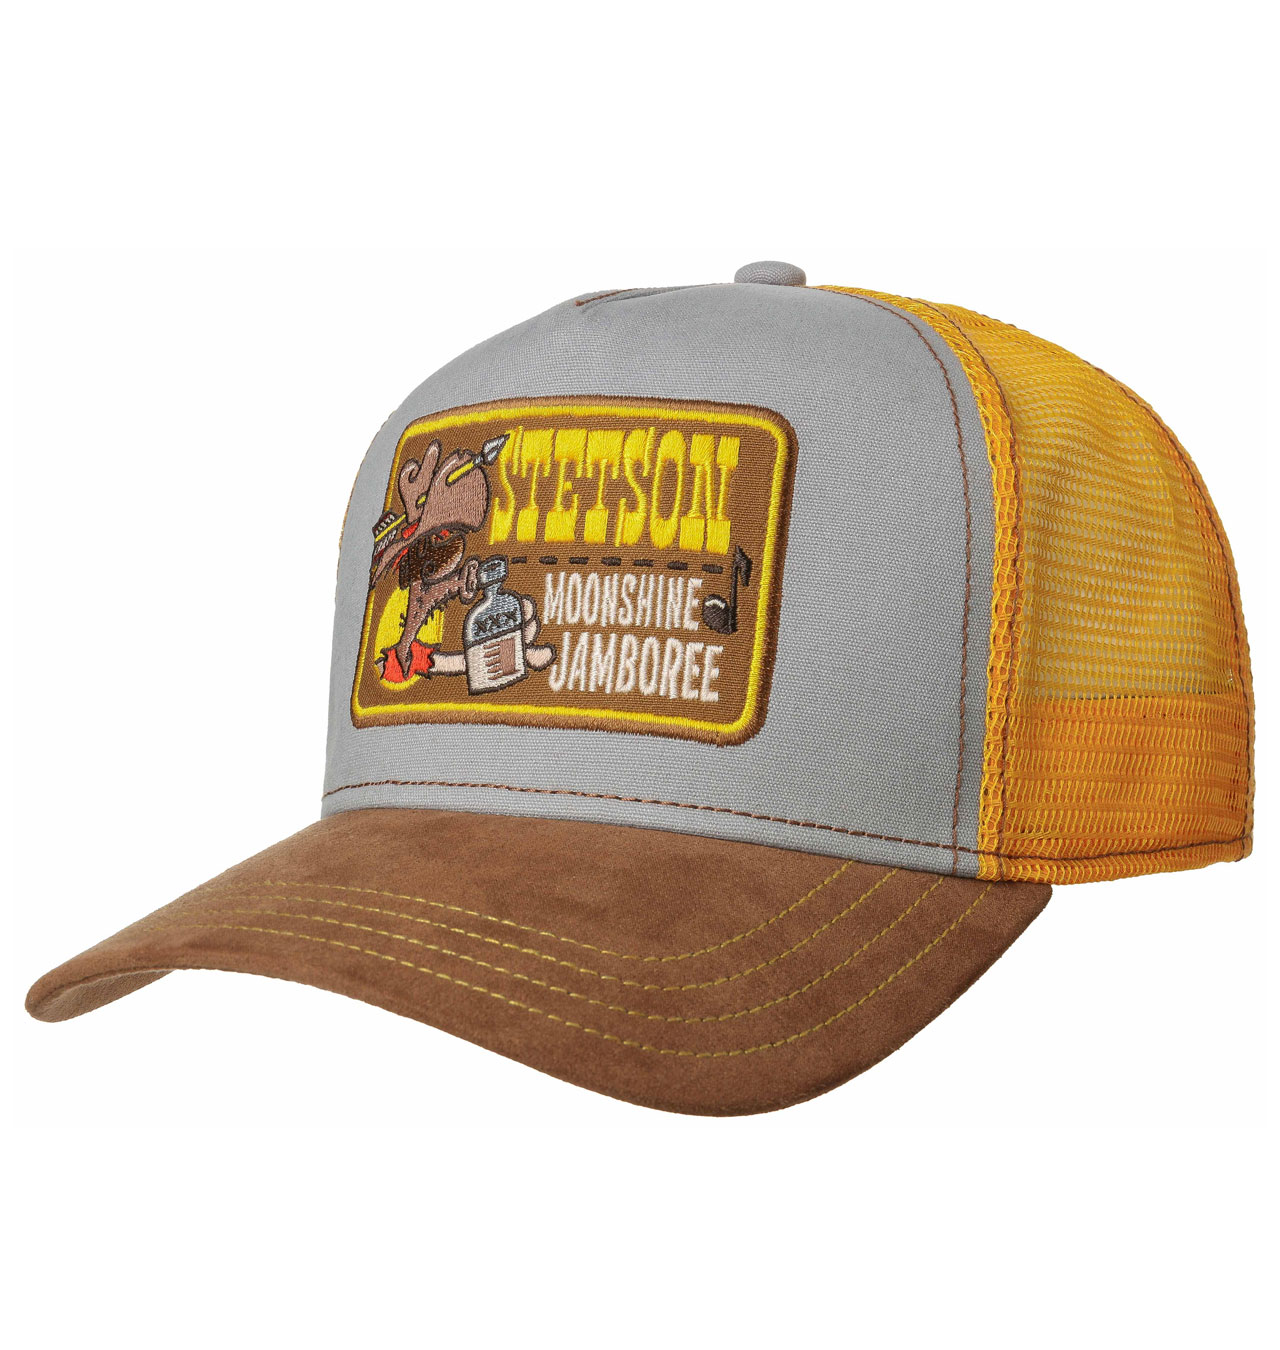 Stetson---Moonshine-Jamboree-Trucker-Cap---Yellow